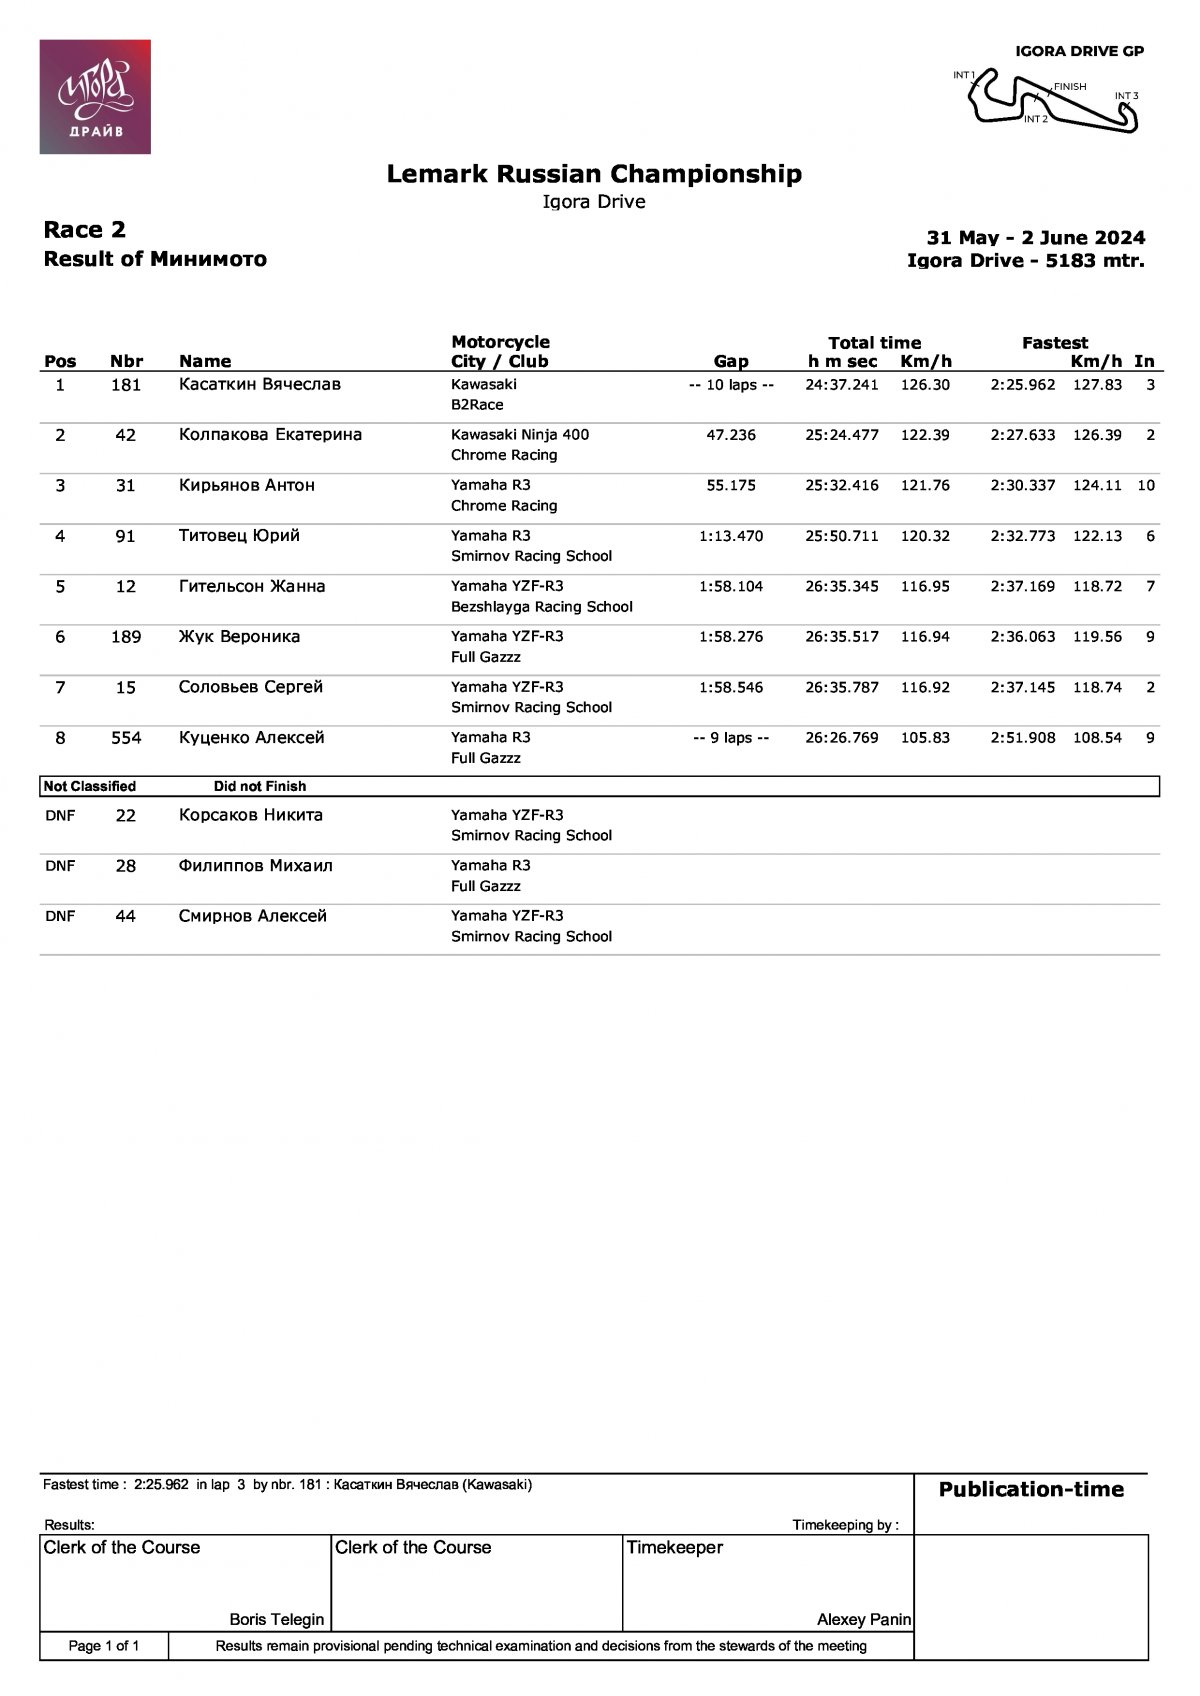 Результаты главной гонки 1 этапа LEMARC чемпионата России по ШКГ, класс Минимото (2.06.2024)